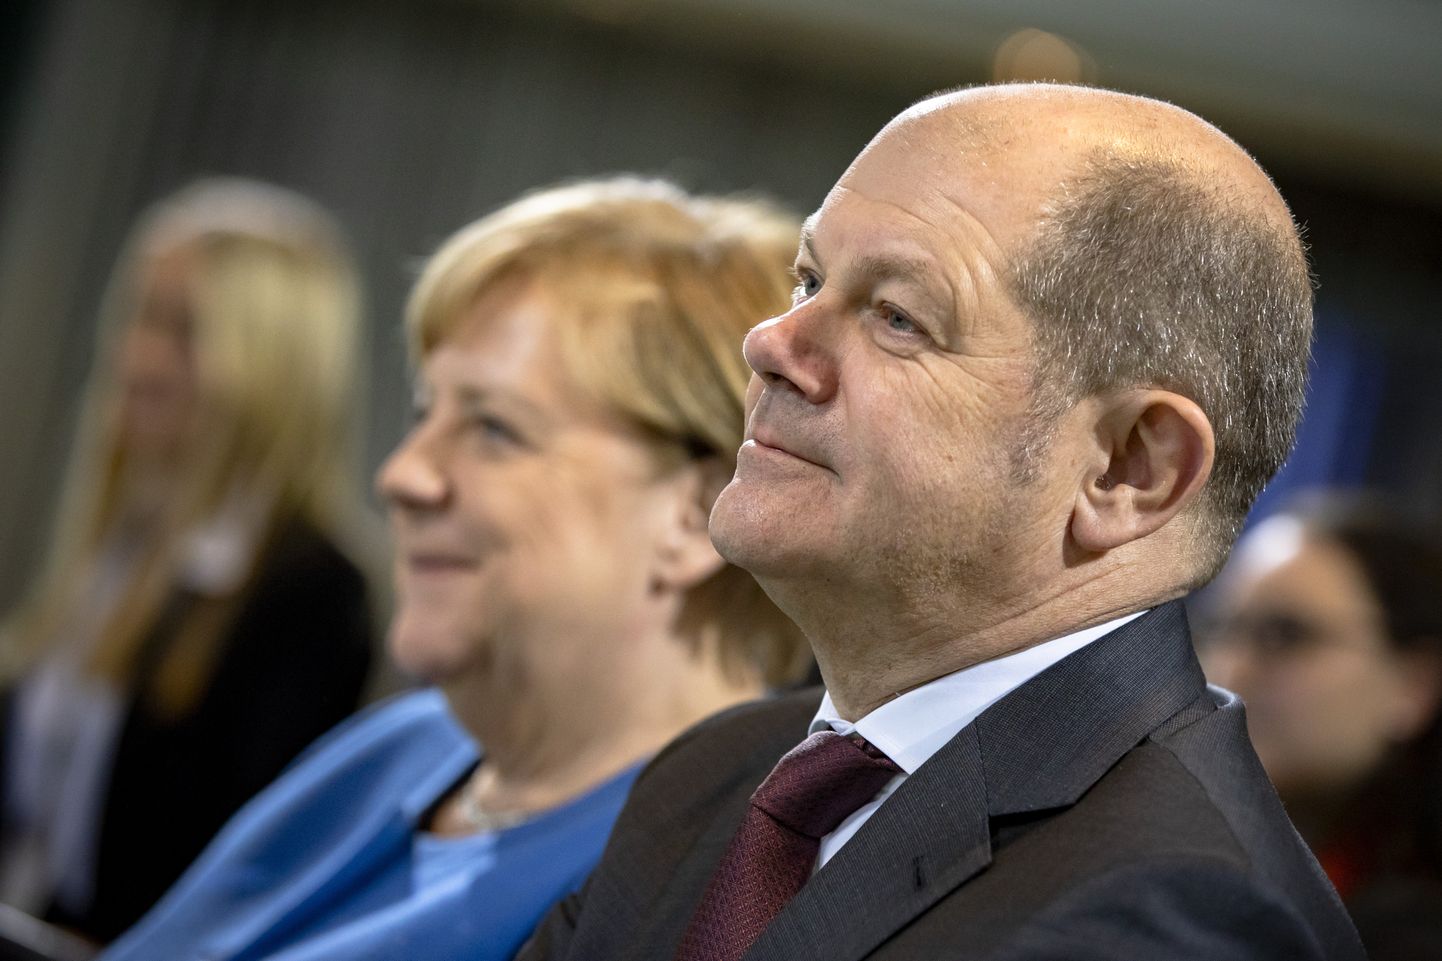 Saksamaa rahandusminister Olaf Scholz (paremal) loodab järgmisel sügisel kantsler Angela Merkelilt tema ametikoha võtta.